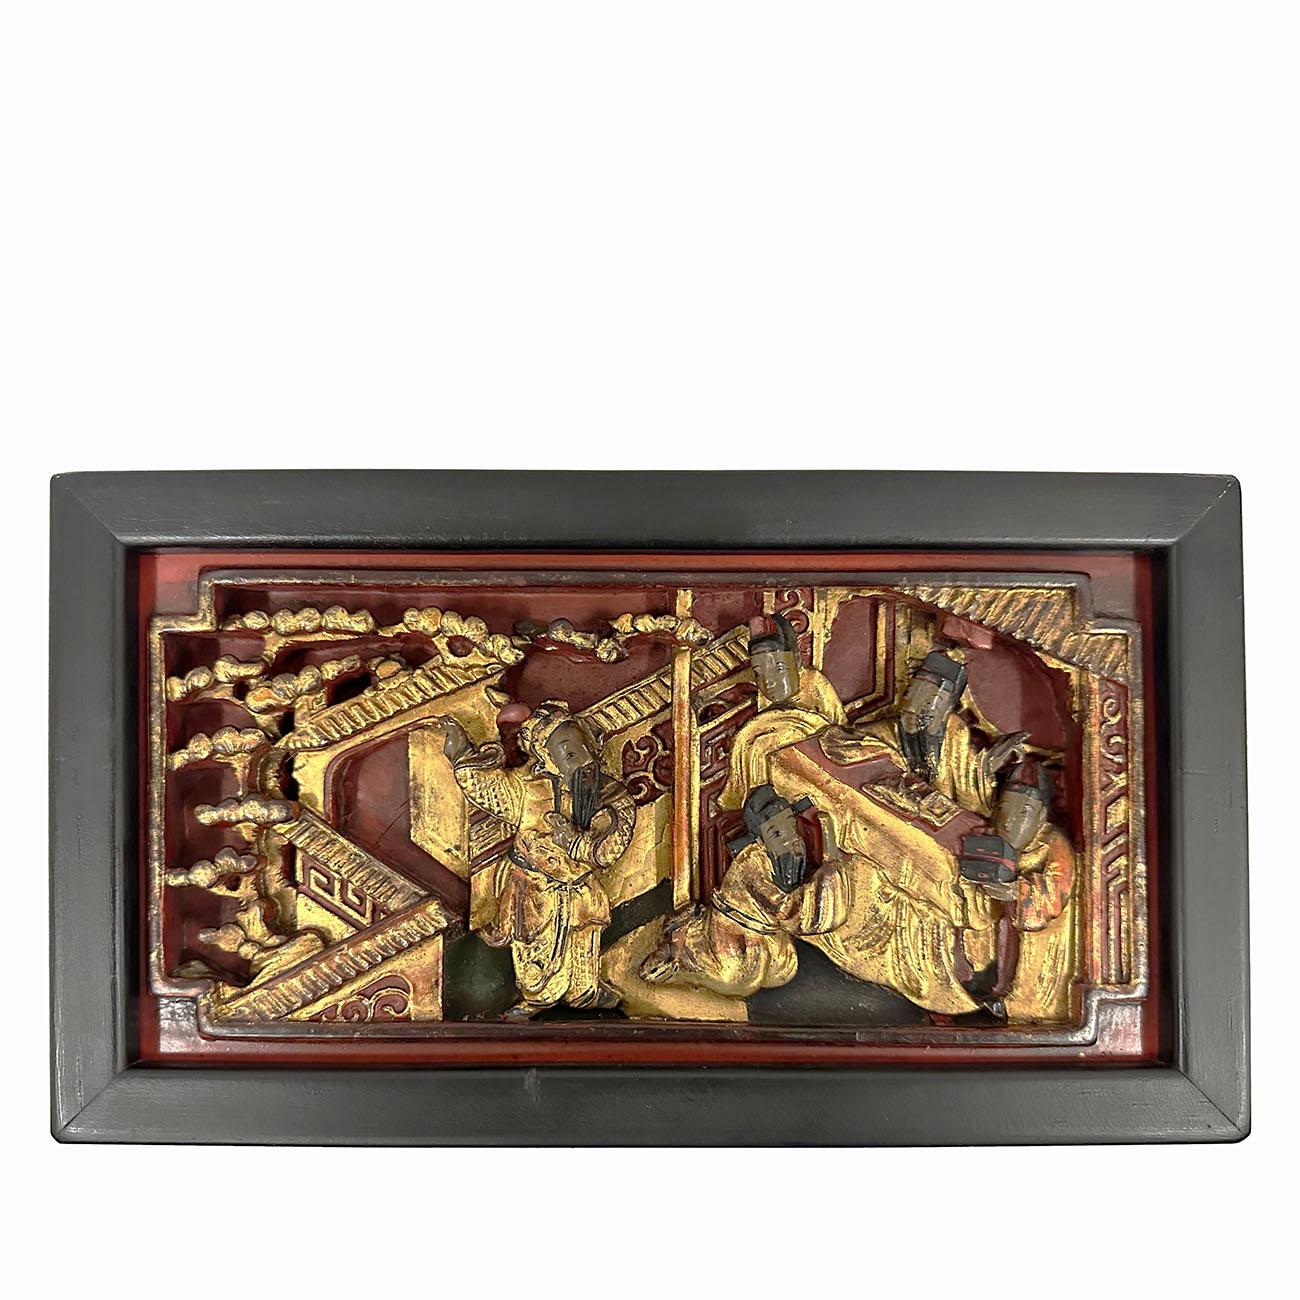 Dieser Satz von drei antiken chinesischen Holzschnitzereien hat sehr tiefe 3D-Schnitzereien Werke der chinesischen Volkskunst - Chinesische Oper mit Gold. Diese sehr detaillierten Schnitzarbeiten sind aus einem Stück Holz geschnitzt und mit einem